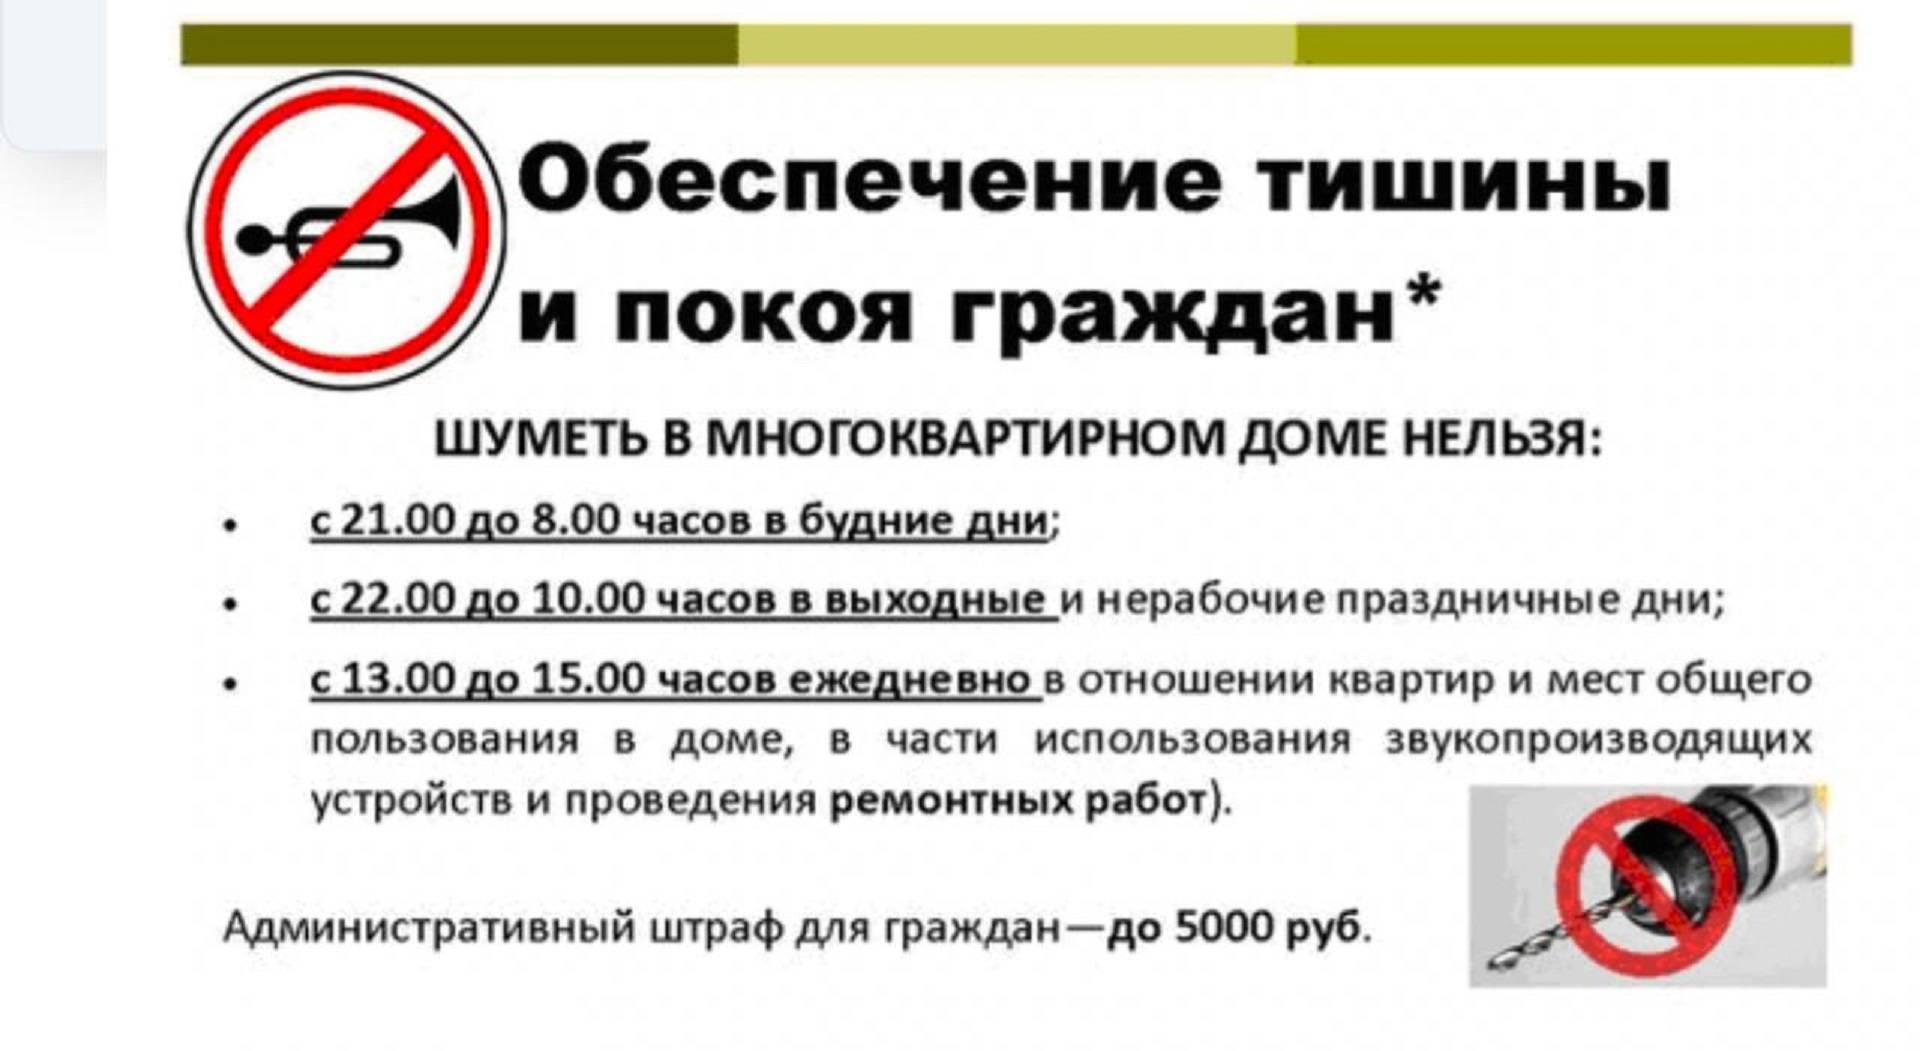 Закон о тишине в московской области 2022: режим, до скольки можно шуметь, делать ремонт, сверлить в многоквартирном доме, когда нельзя слушать музыку